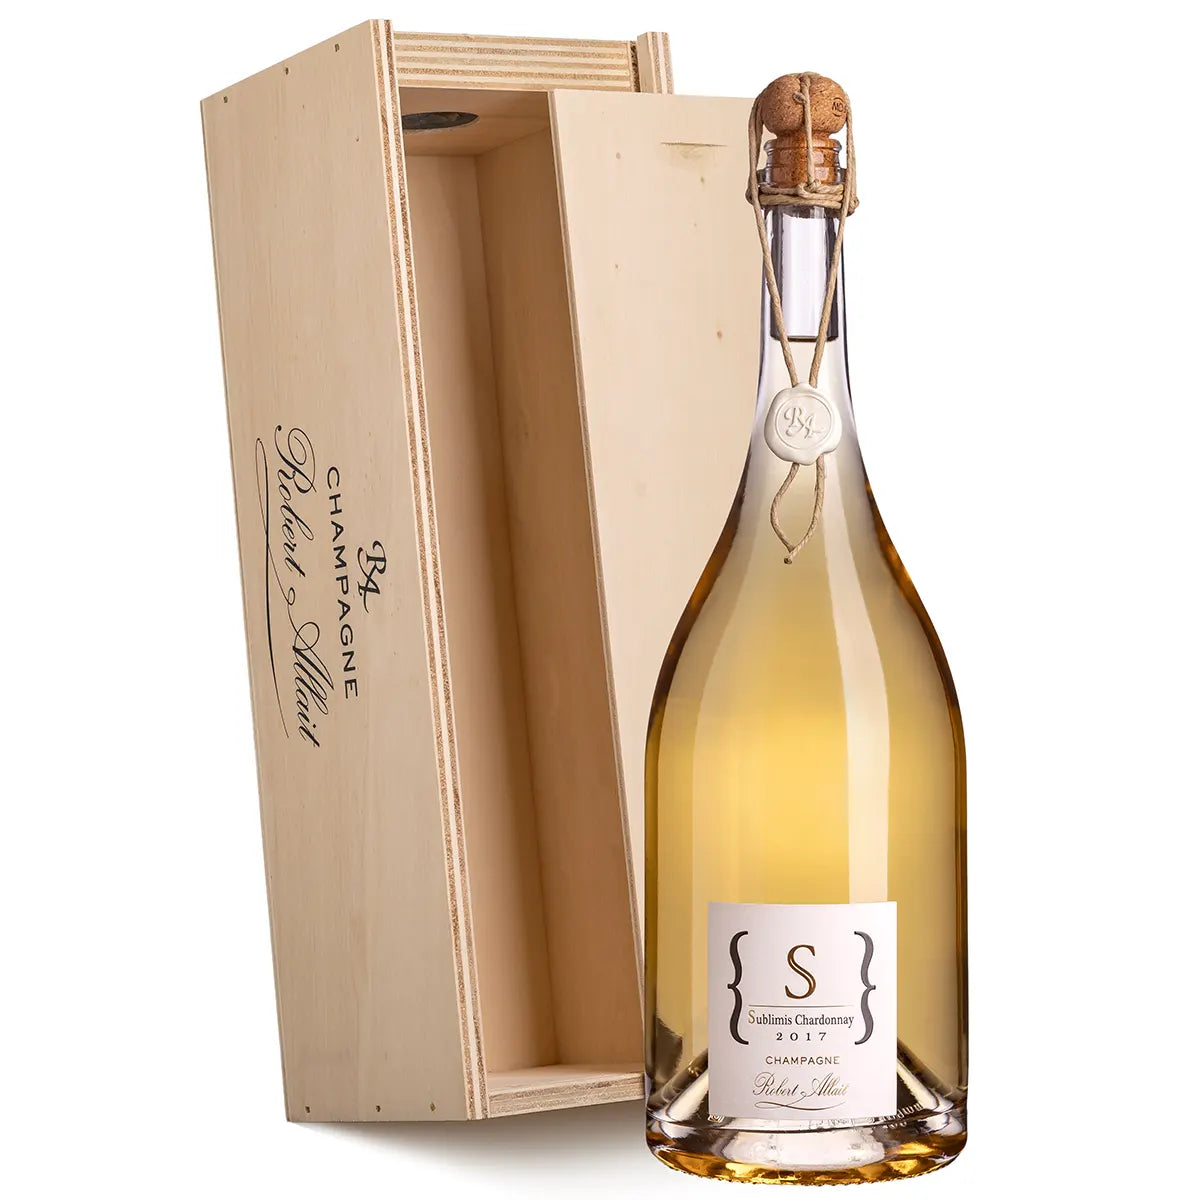  Chardonnay Magnum Robert Allait Sublimis 2017 1.5L